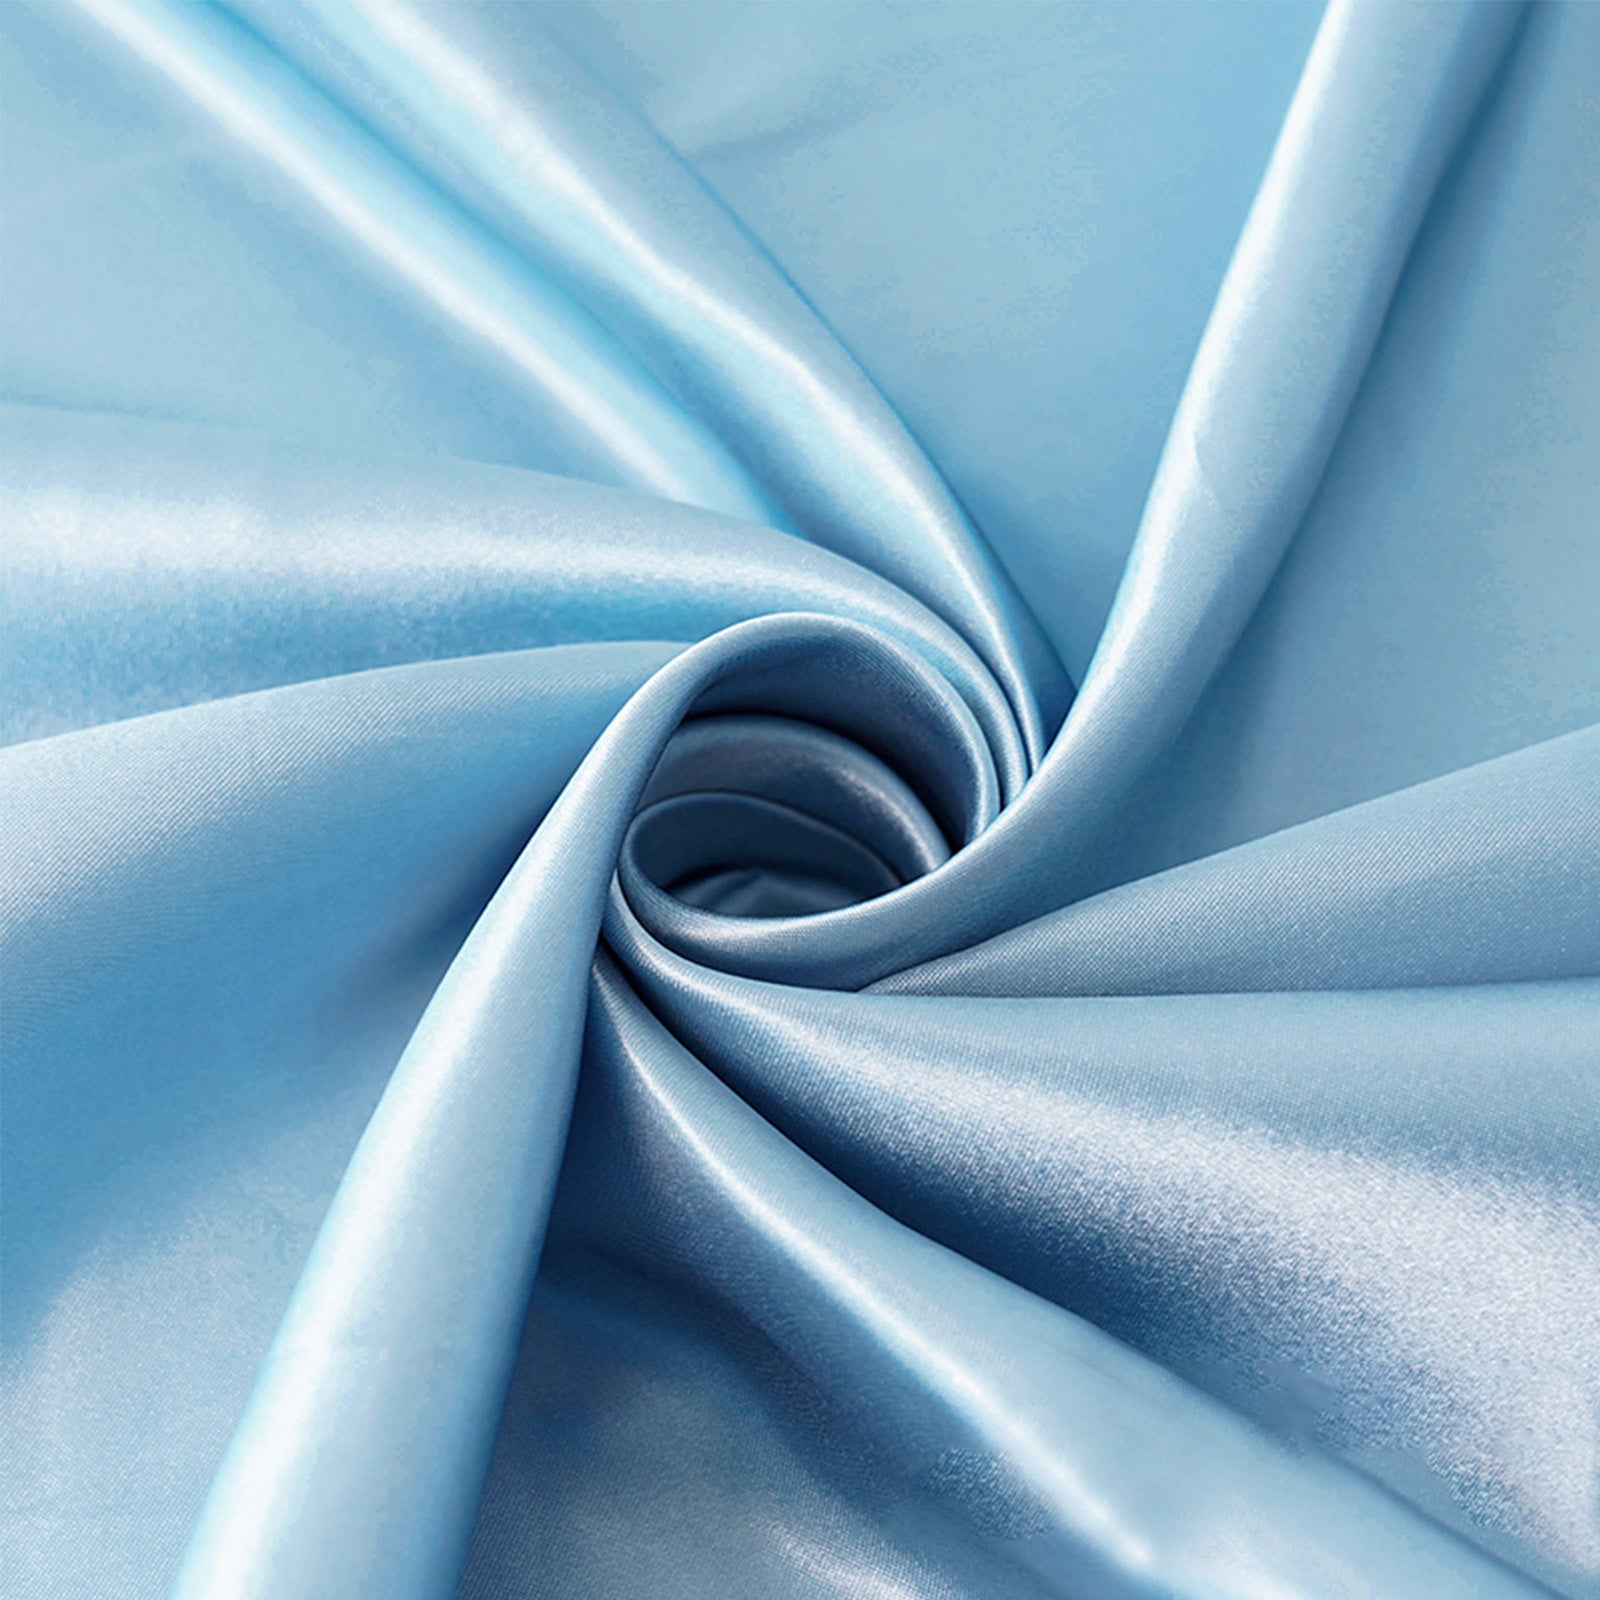 Powder Blue Duchess Satin Fabric - Bridal Fabric by the Yard